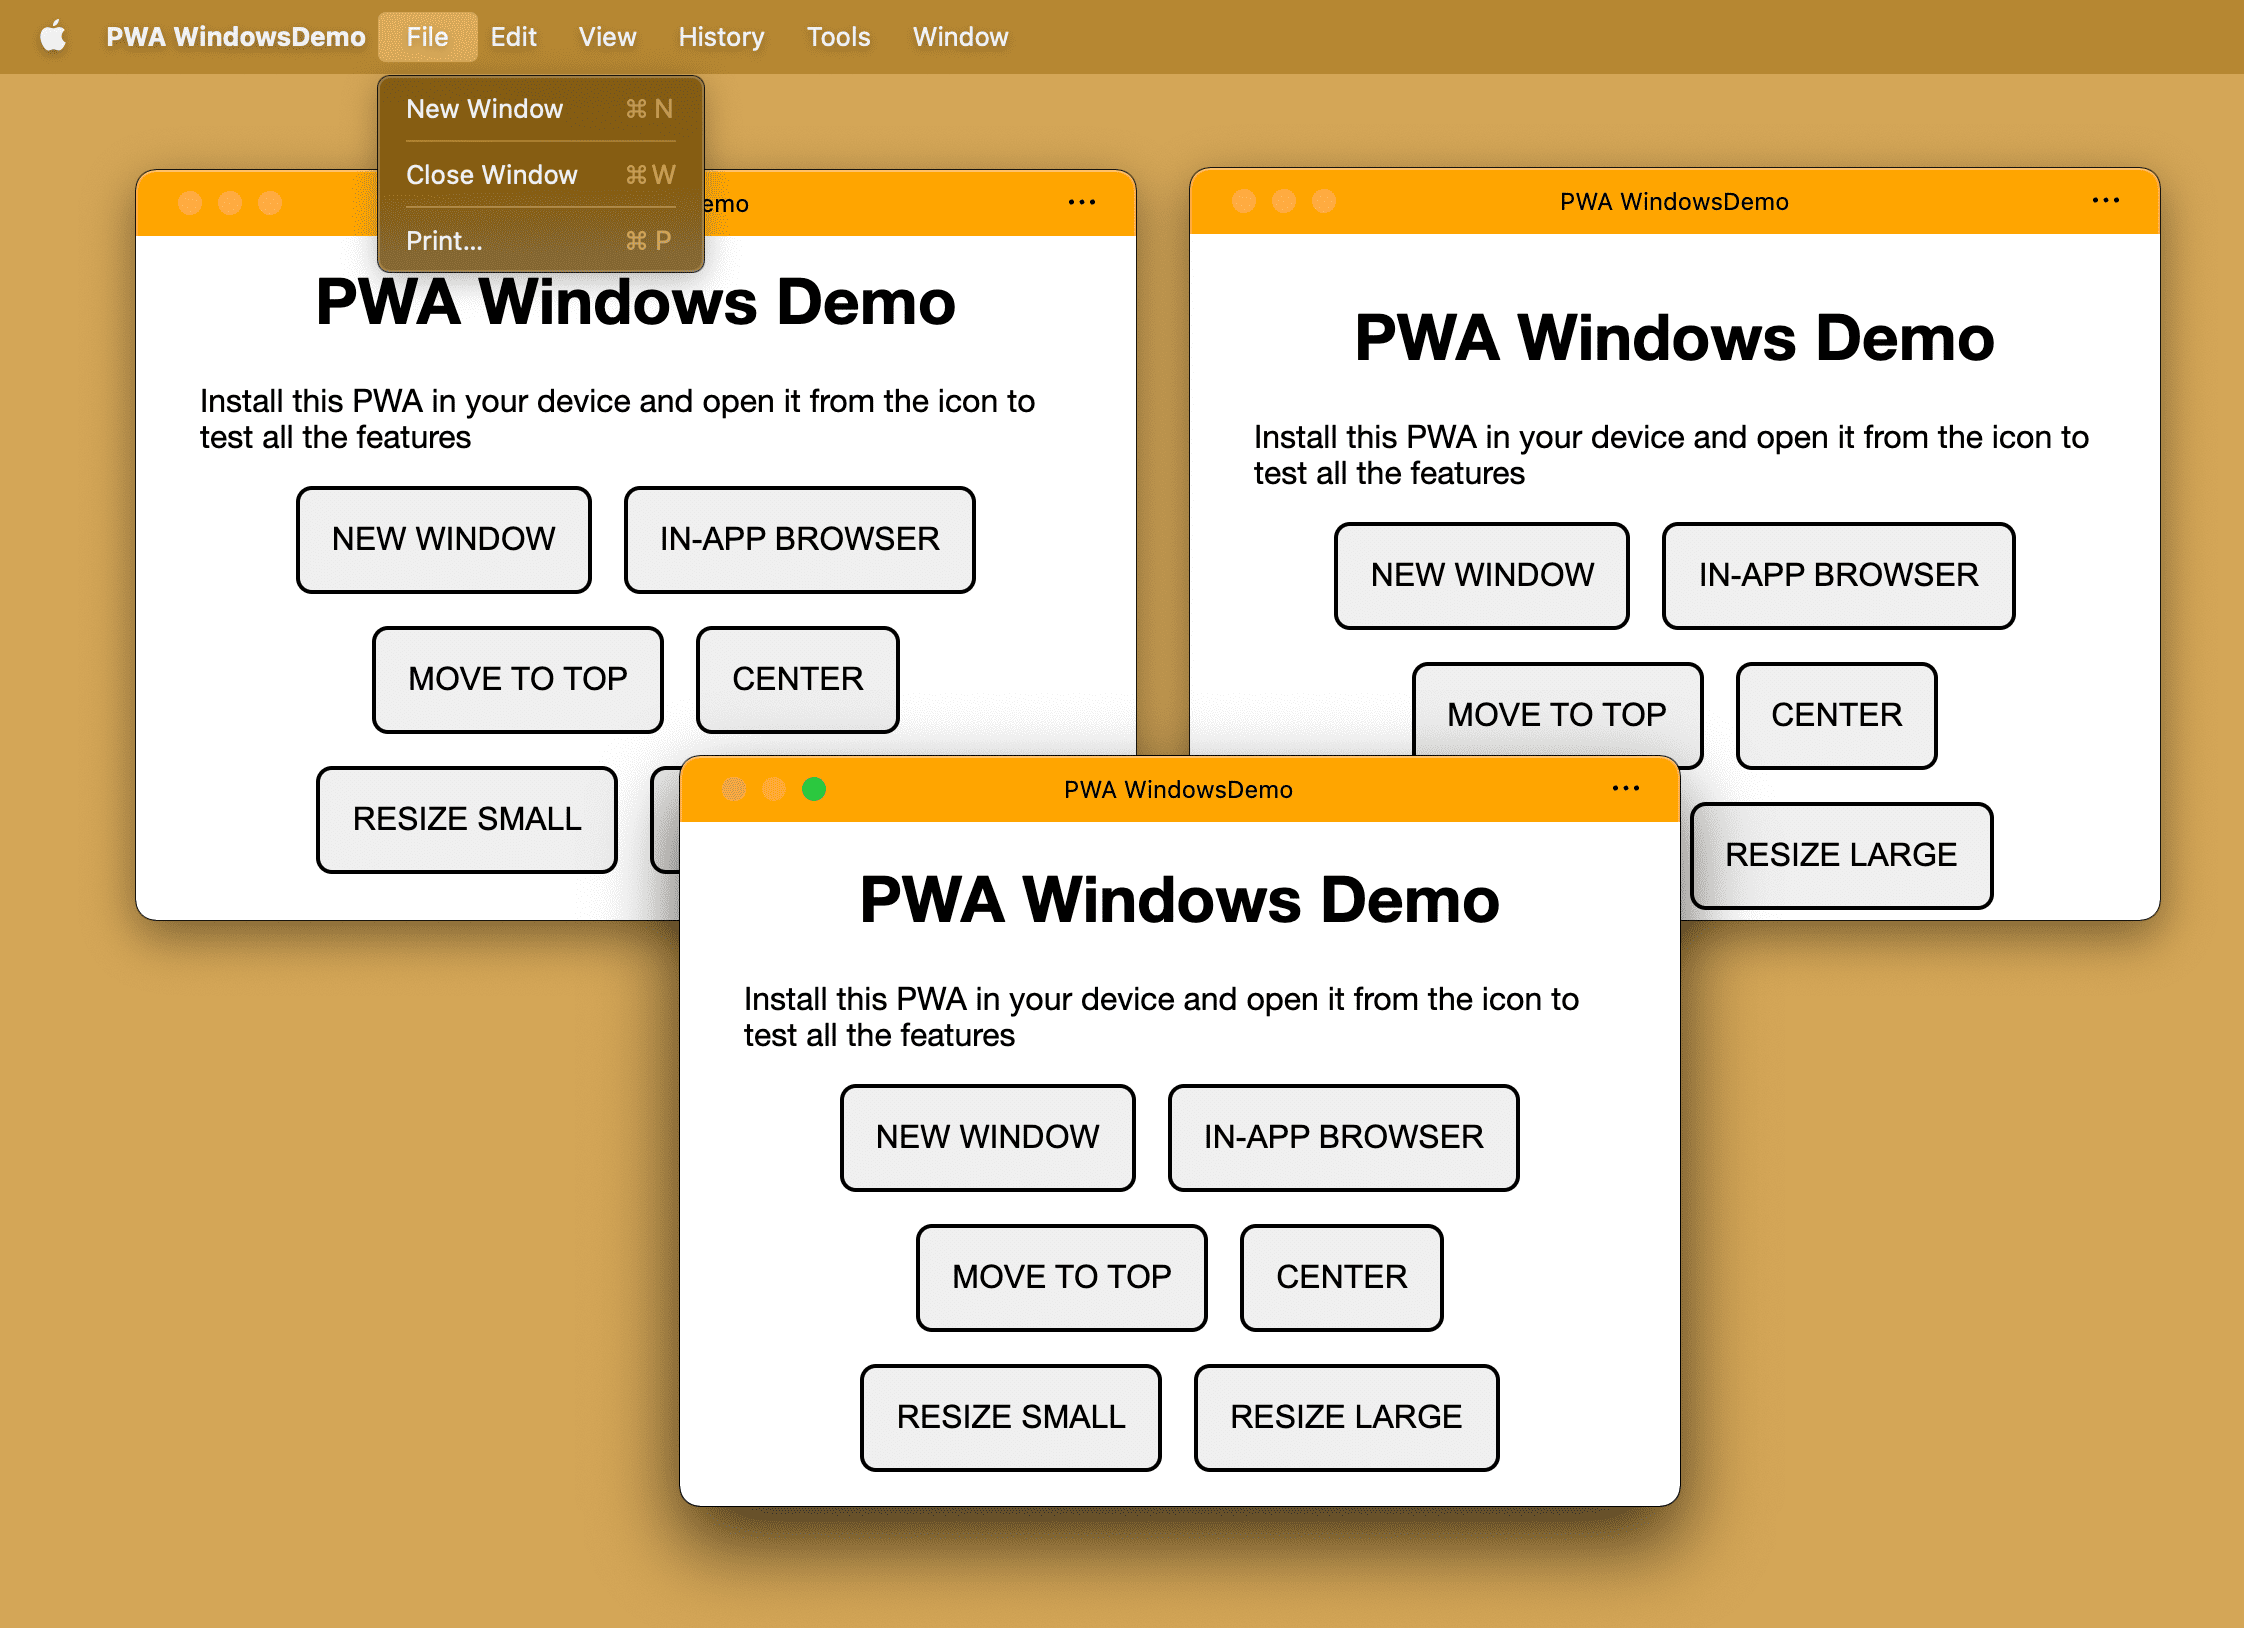 То же самое установленное PWA с несколькими открытыми окнами в настольной операционной системе.